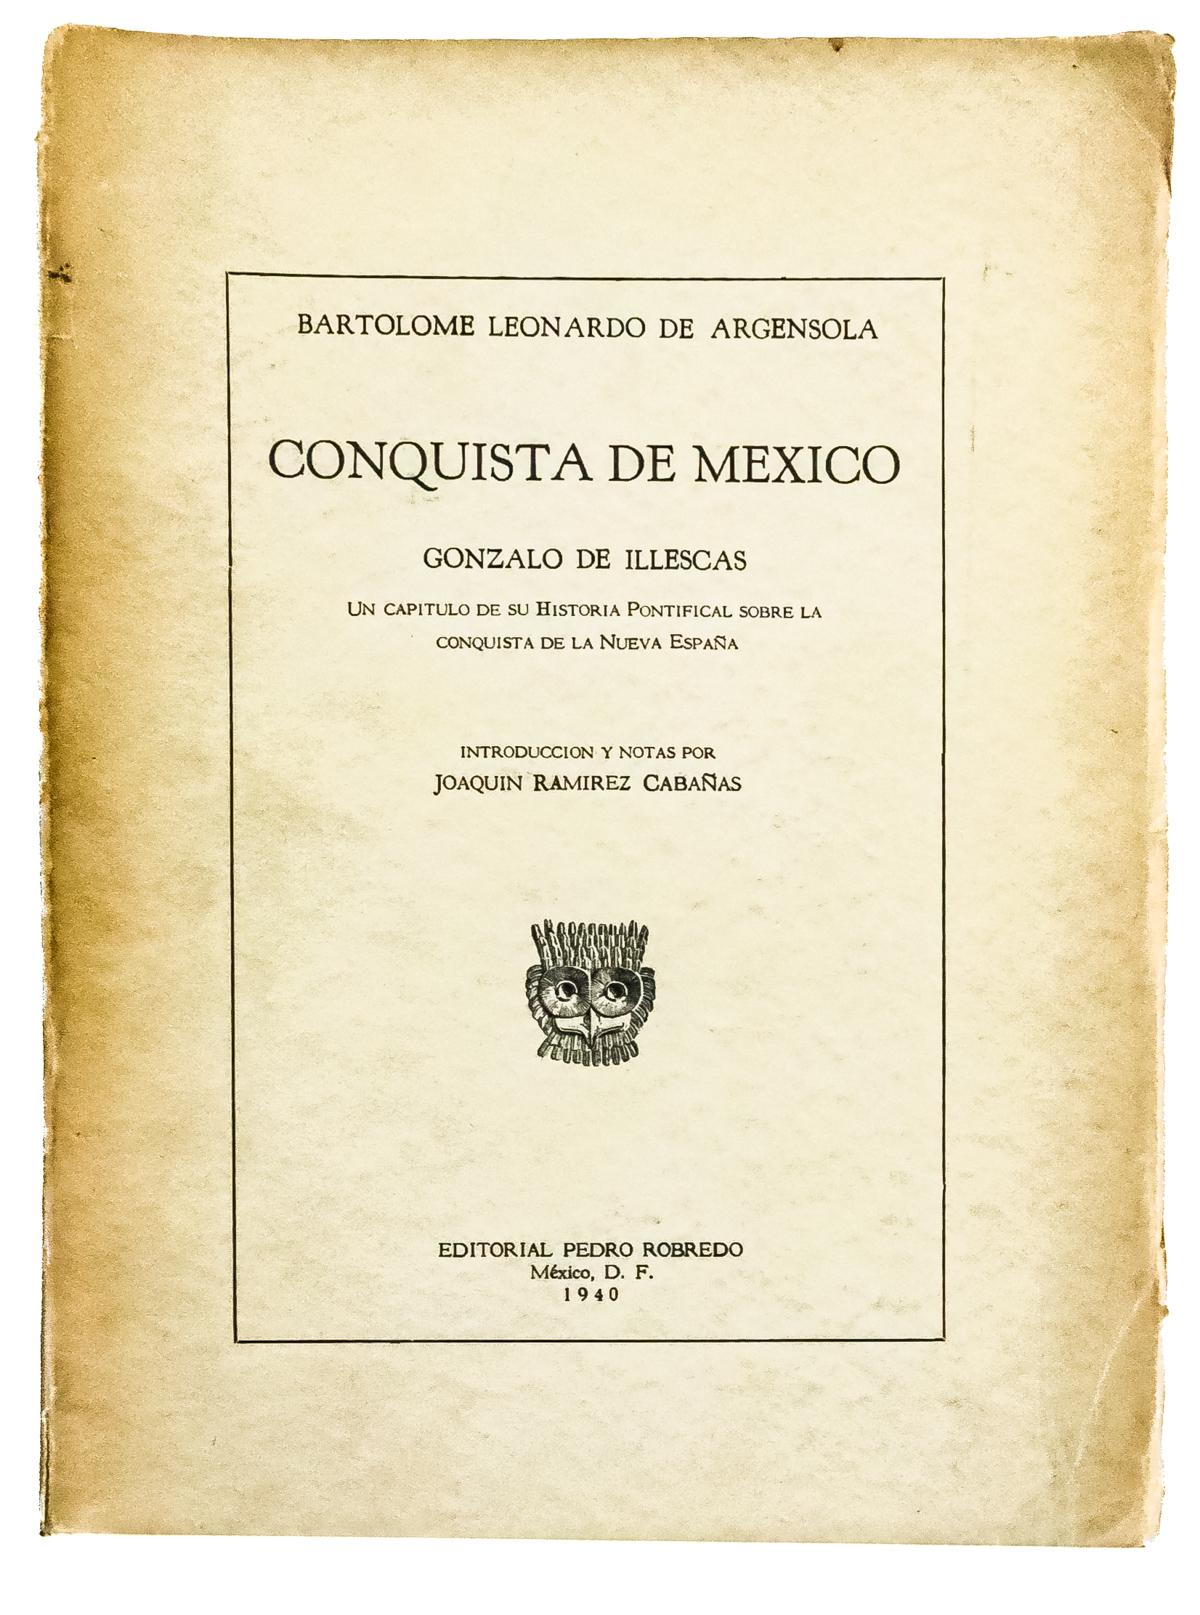 "CONQUISTA DE MEXICO"